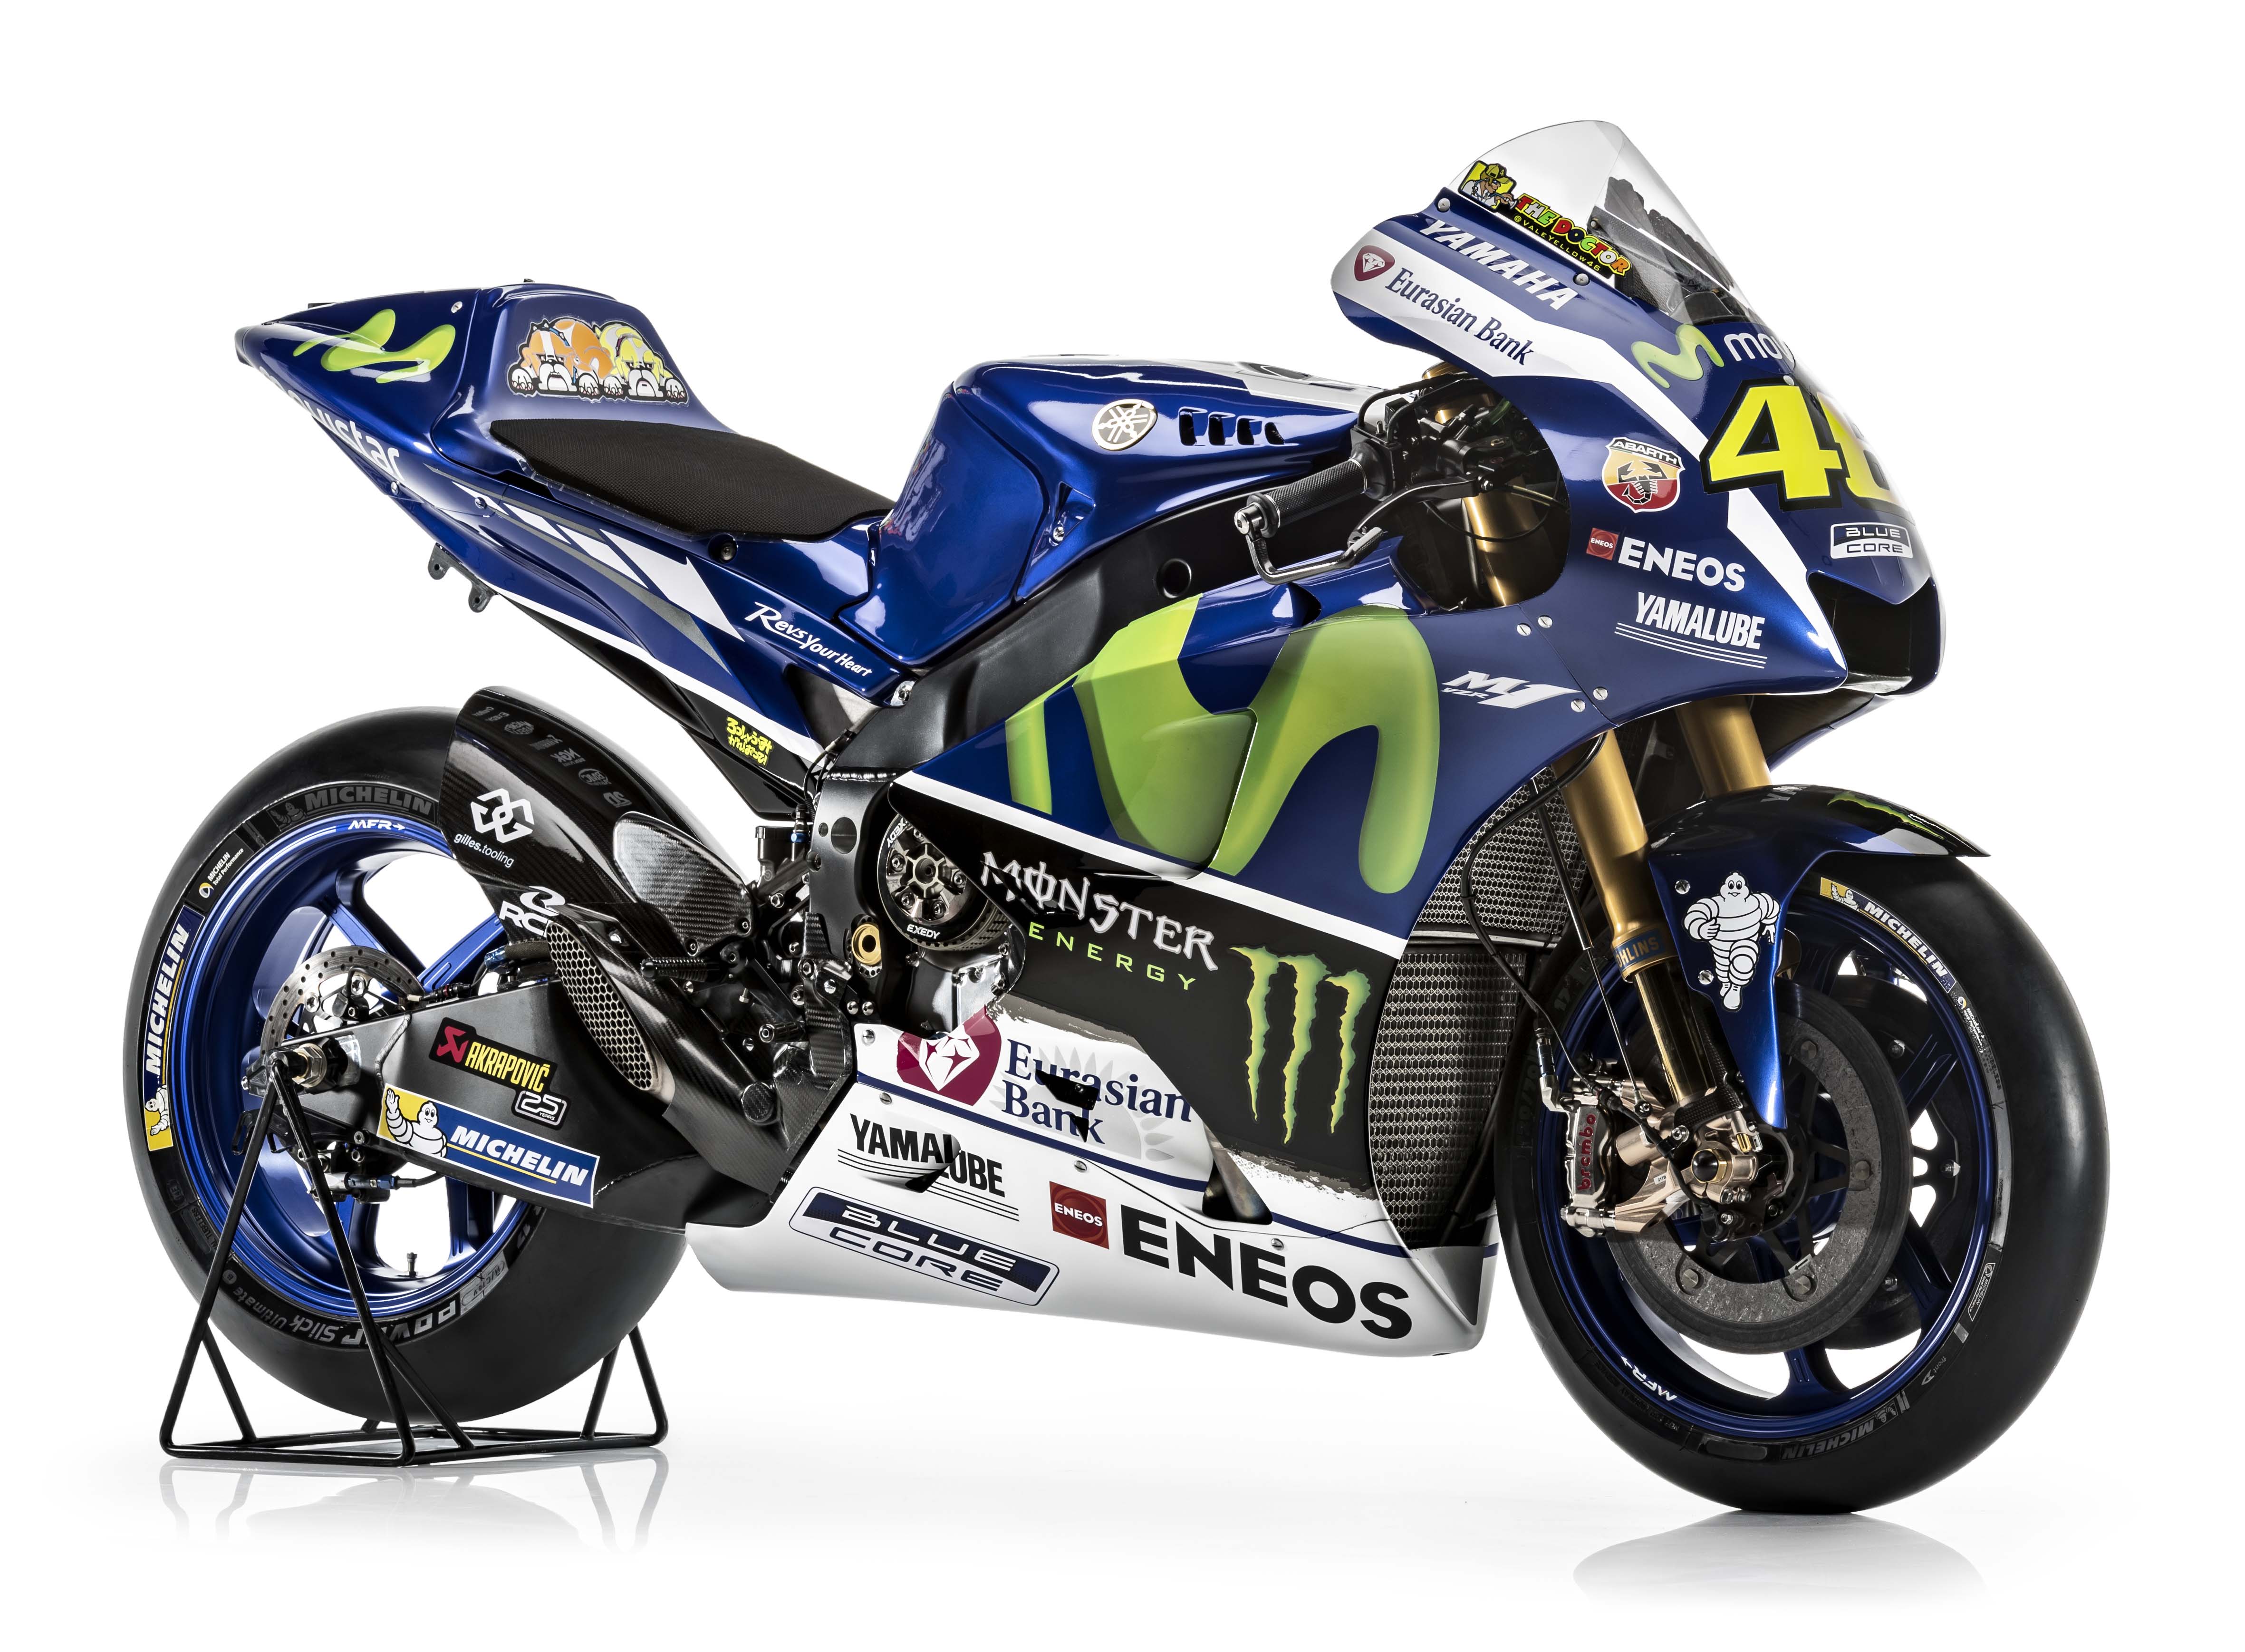 Jorge Lorenzo Yamaha yzr-m1 Factory Racing No 99 MotoGP 2016 